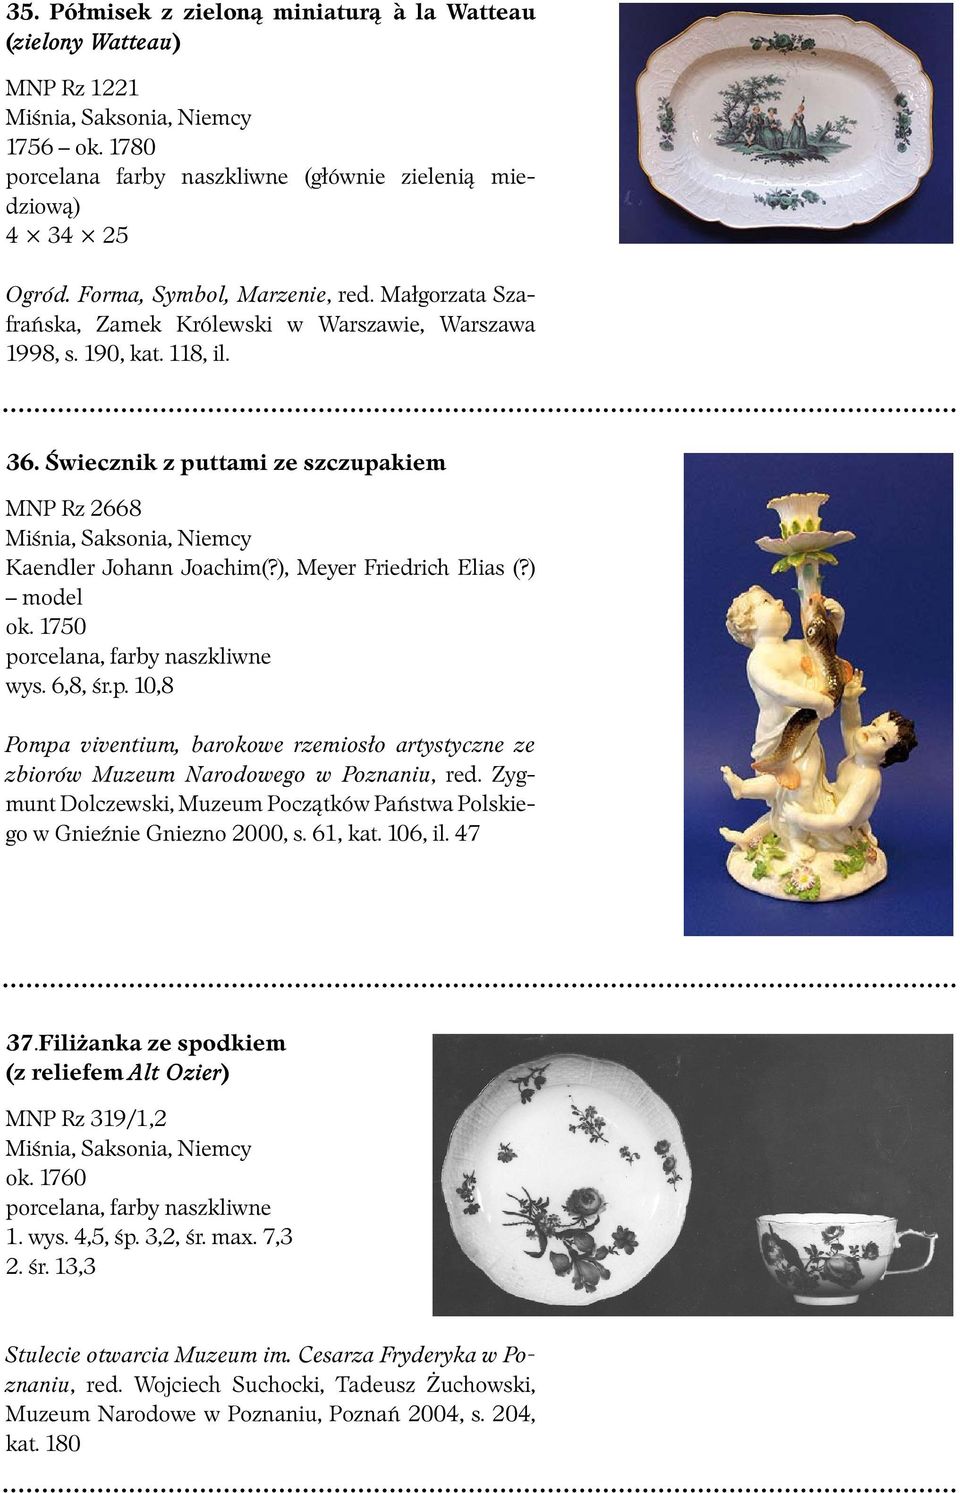 Świecznik z puttami ze szczupakiem MNP Rz 2668 Kaendler Johann Joachim(?), Meyer Friedrich Elias (?) model ok. 1750 wys. 6,8, śr.p. 10,8 w Gnieźnie Gniezno 2000, s. 61, kat. 106, il.